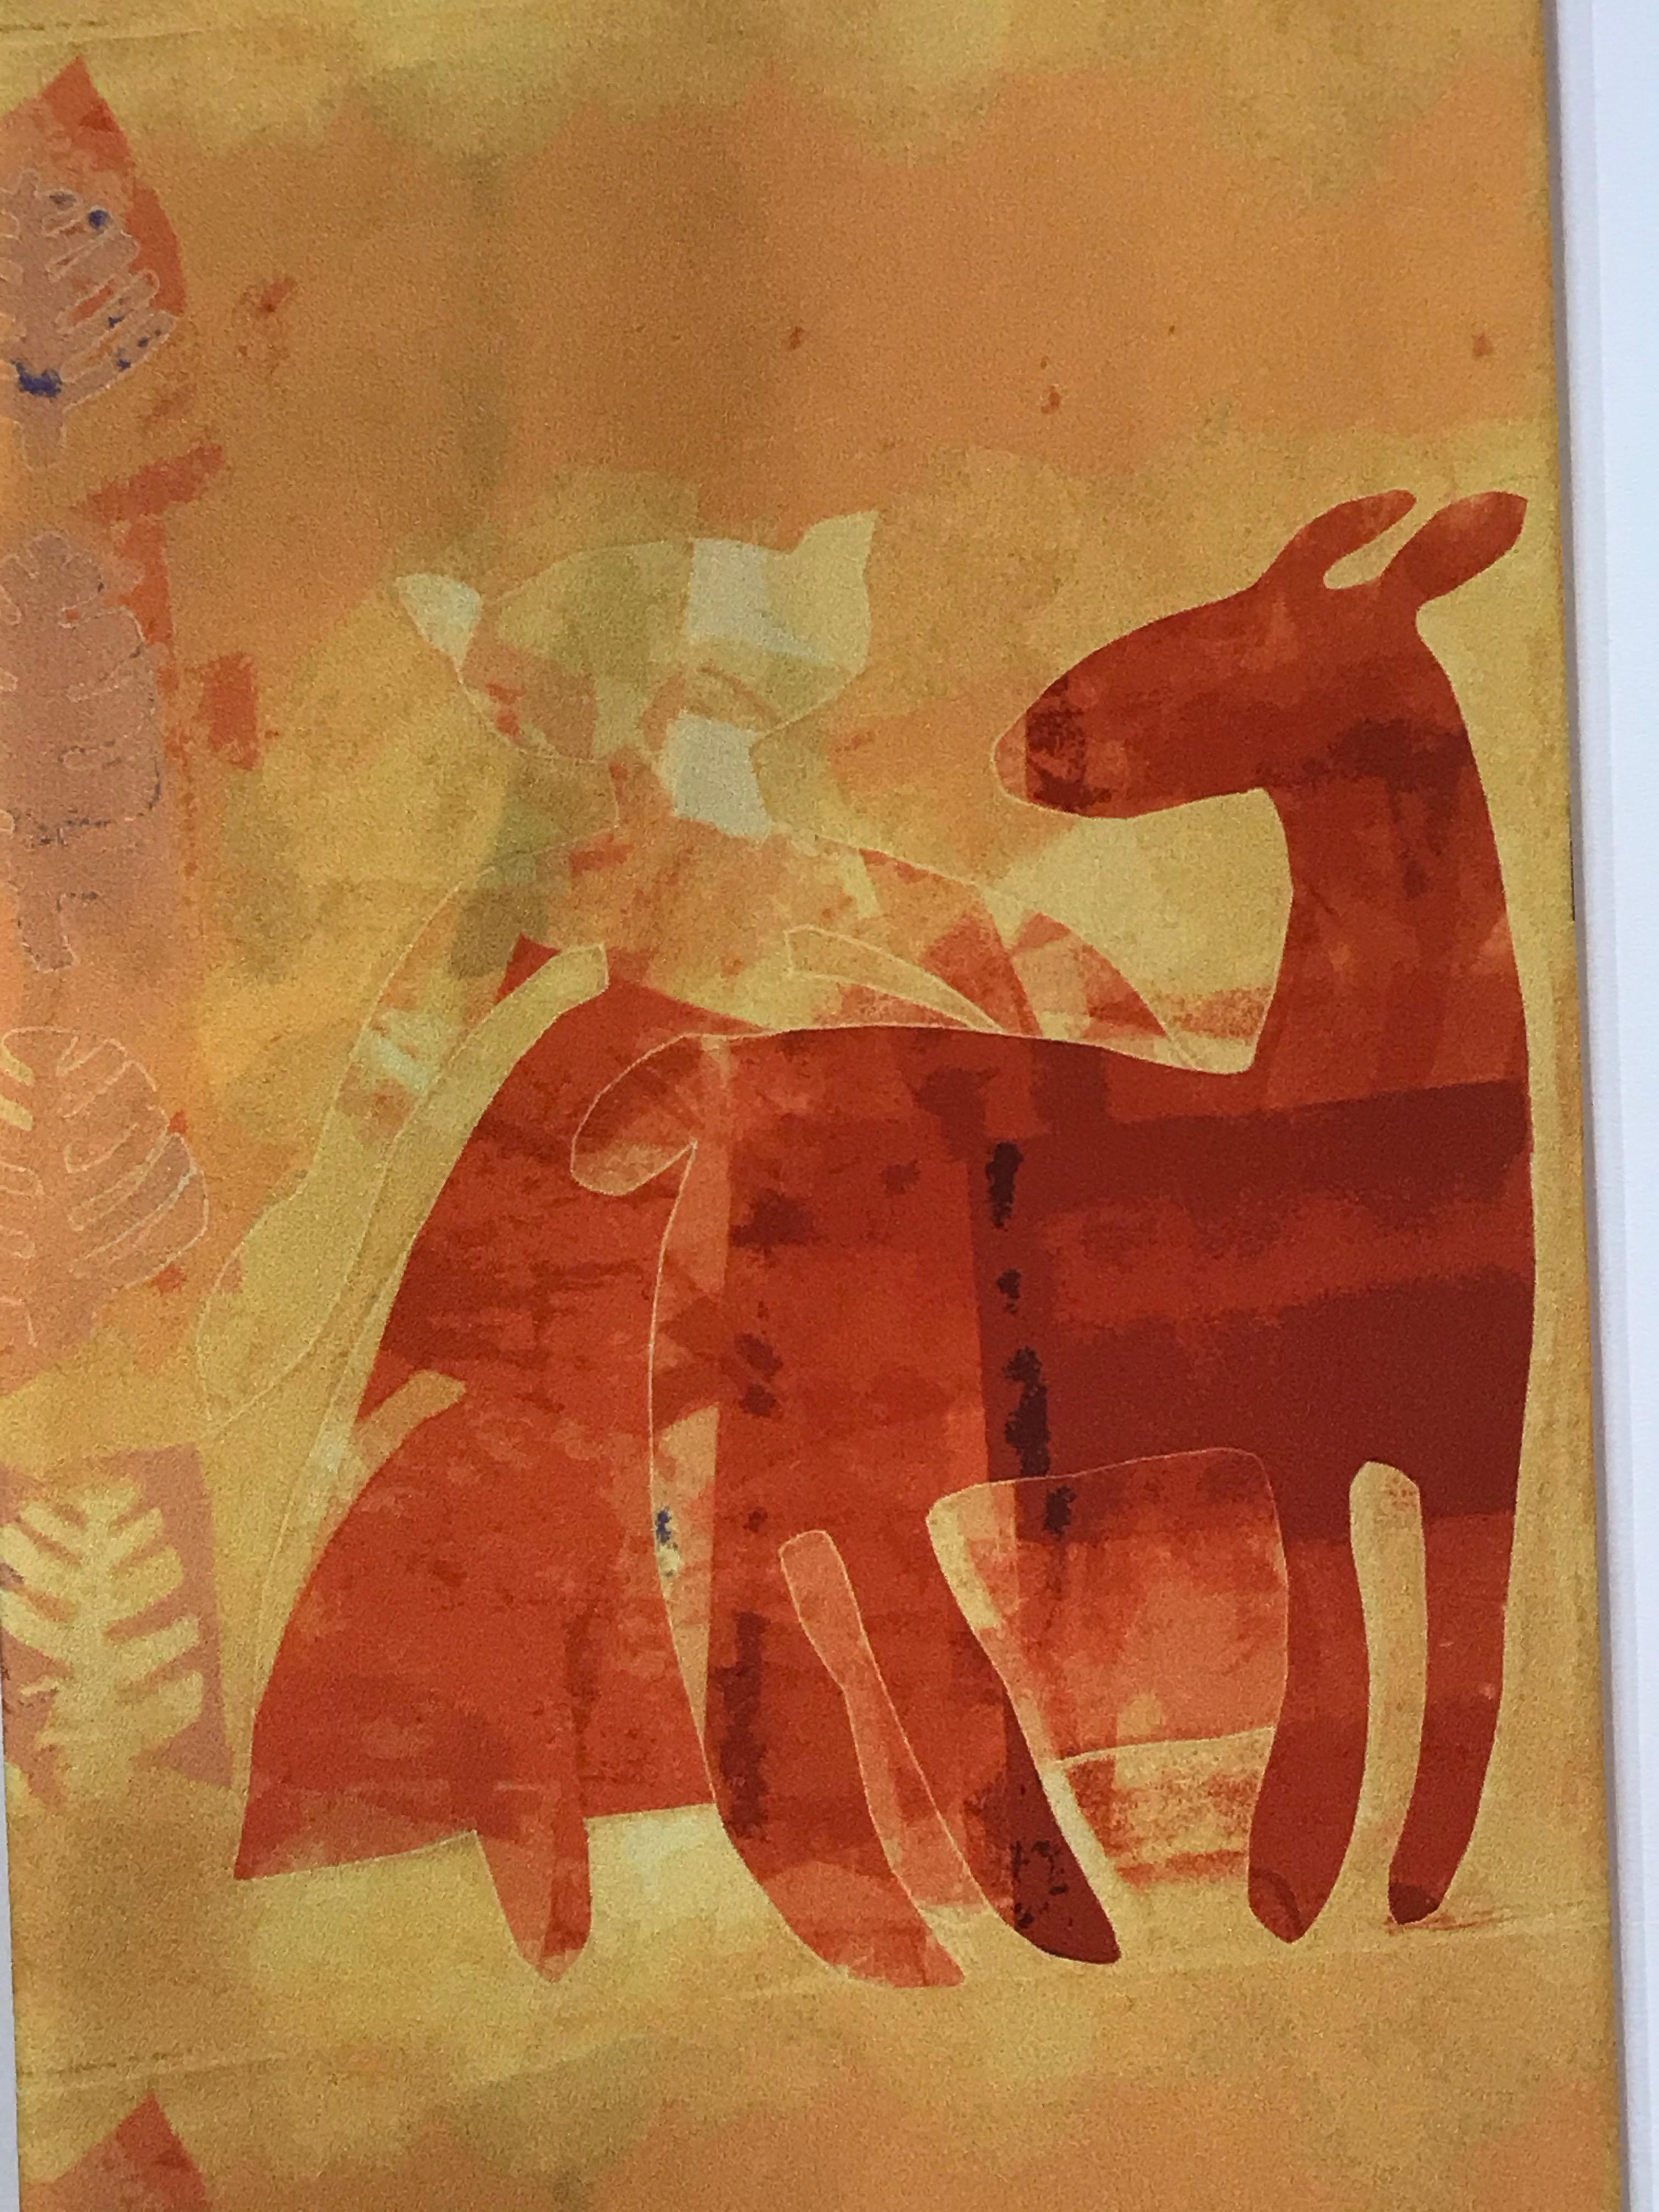 Réponse automatique à Automne, foulard, orange, jaune, or, cerf, chat, amérindien
poly crêpe de chine, double couche - les images apparaissent sur les deux côtés de l'écharpe
Melanie A. Yazzie (Navajo-Diné) est une artiste multimédia très réputée,